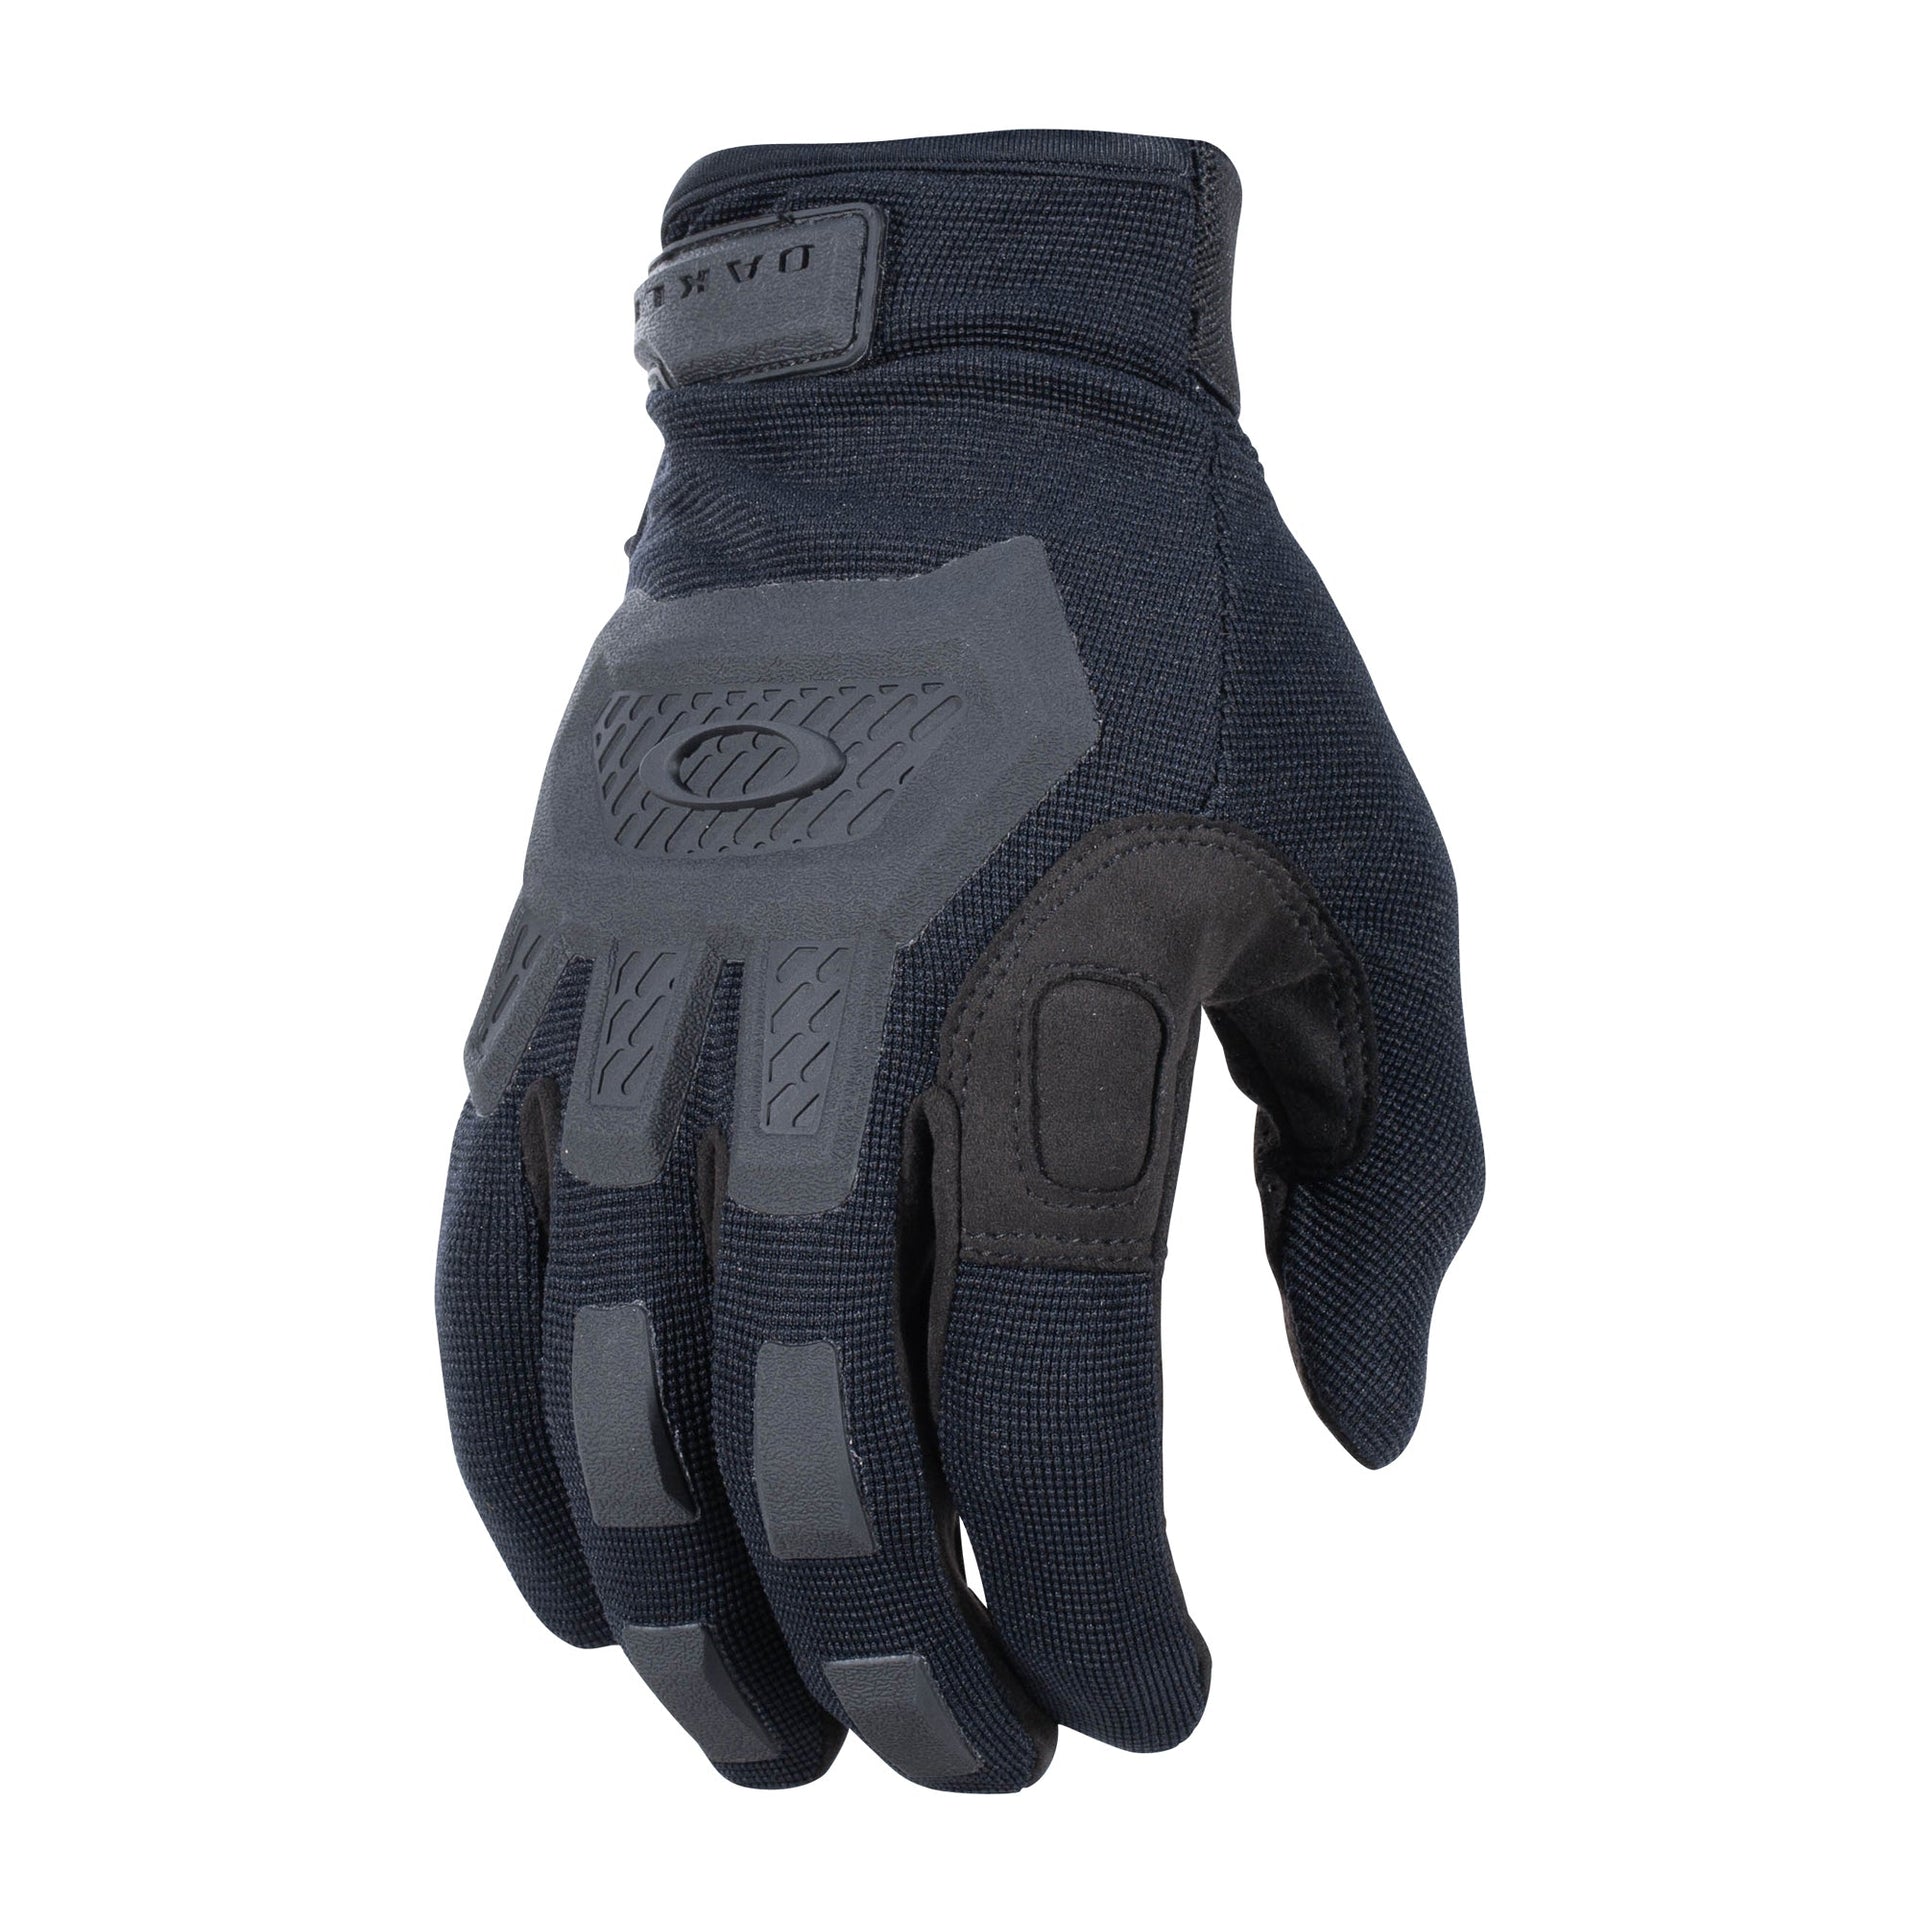 Flexion 2.0 Gloves